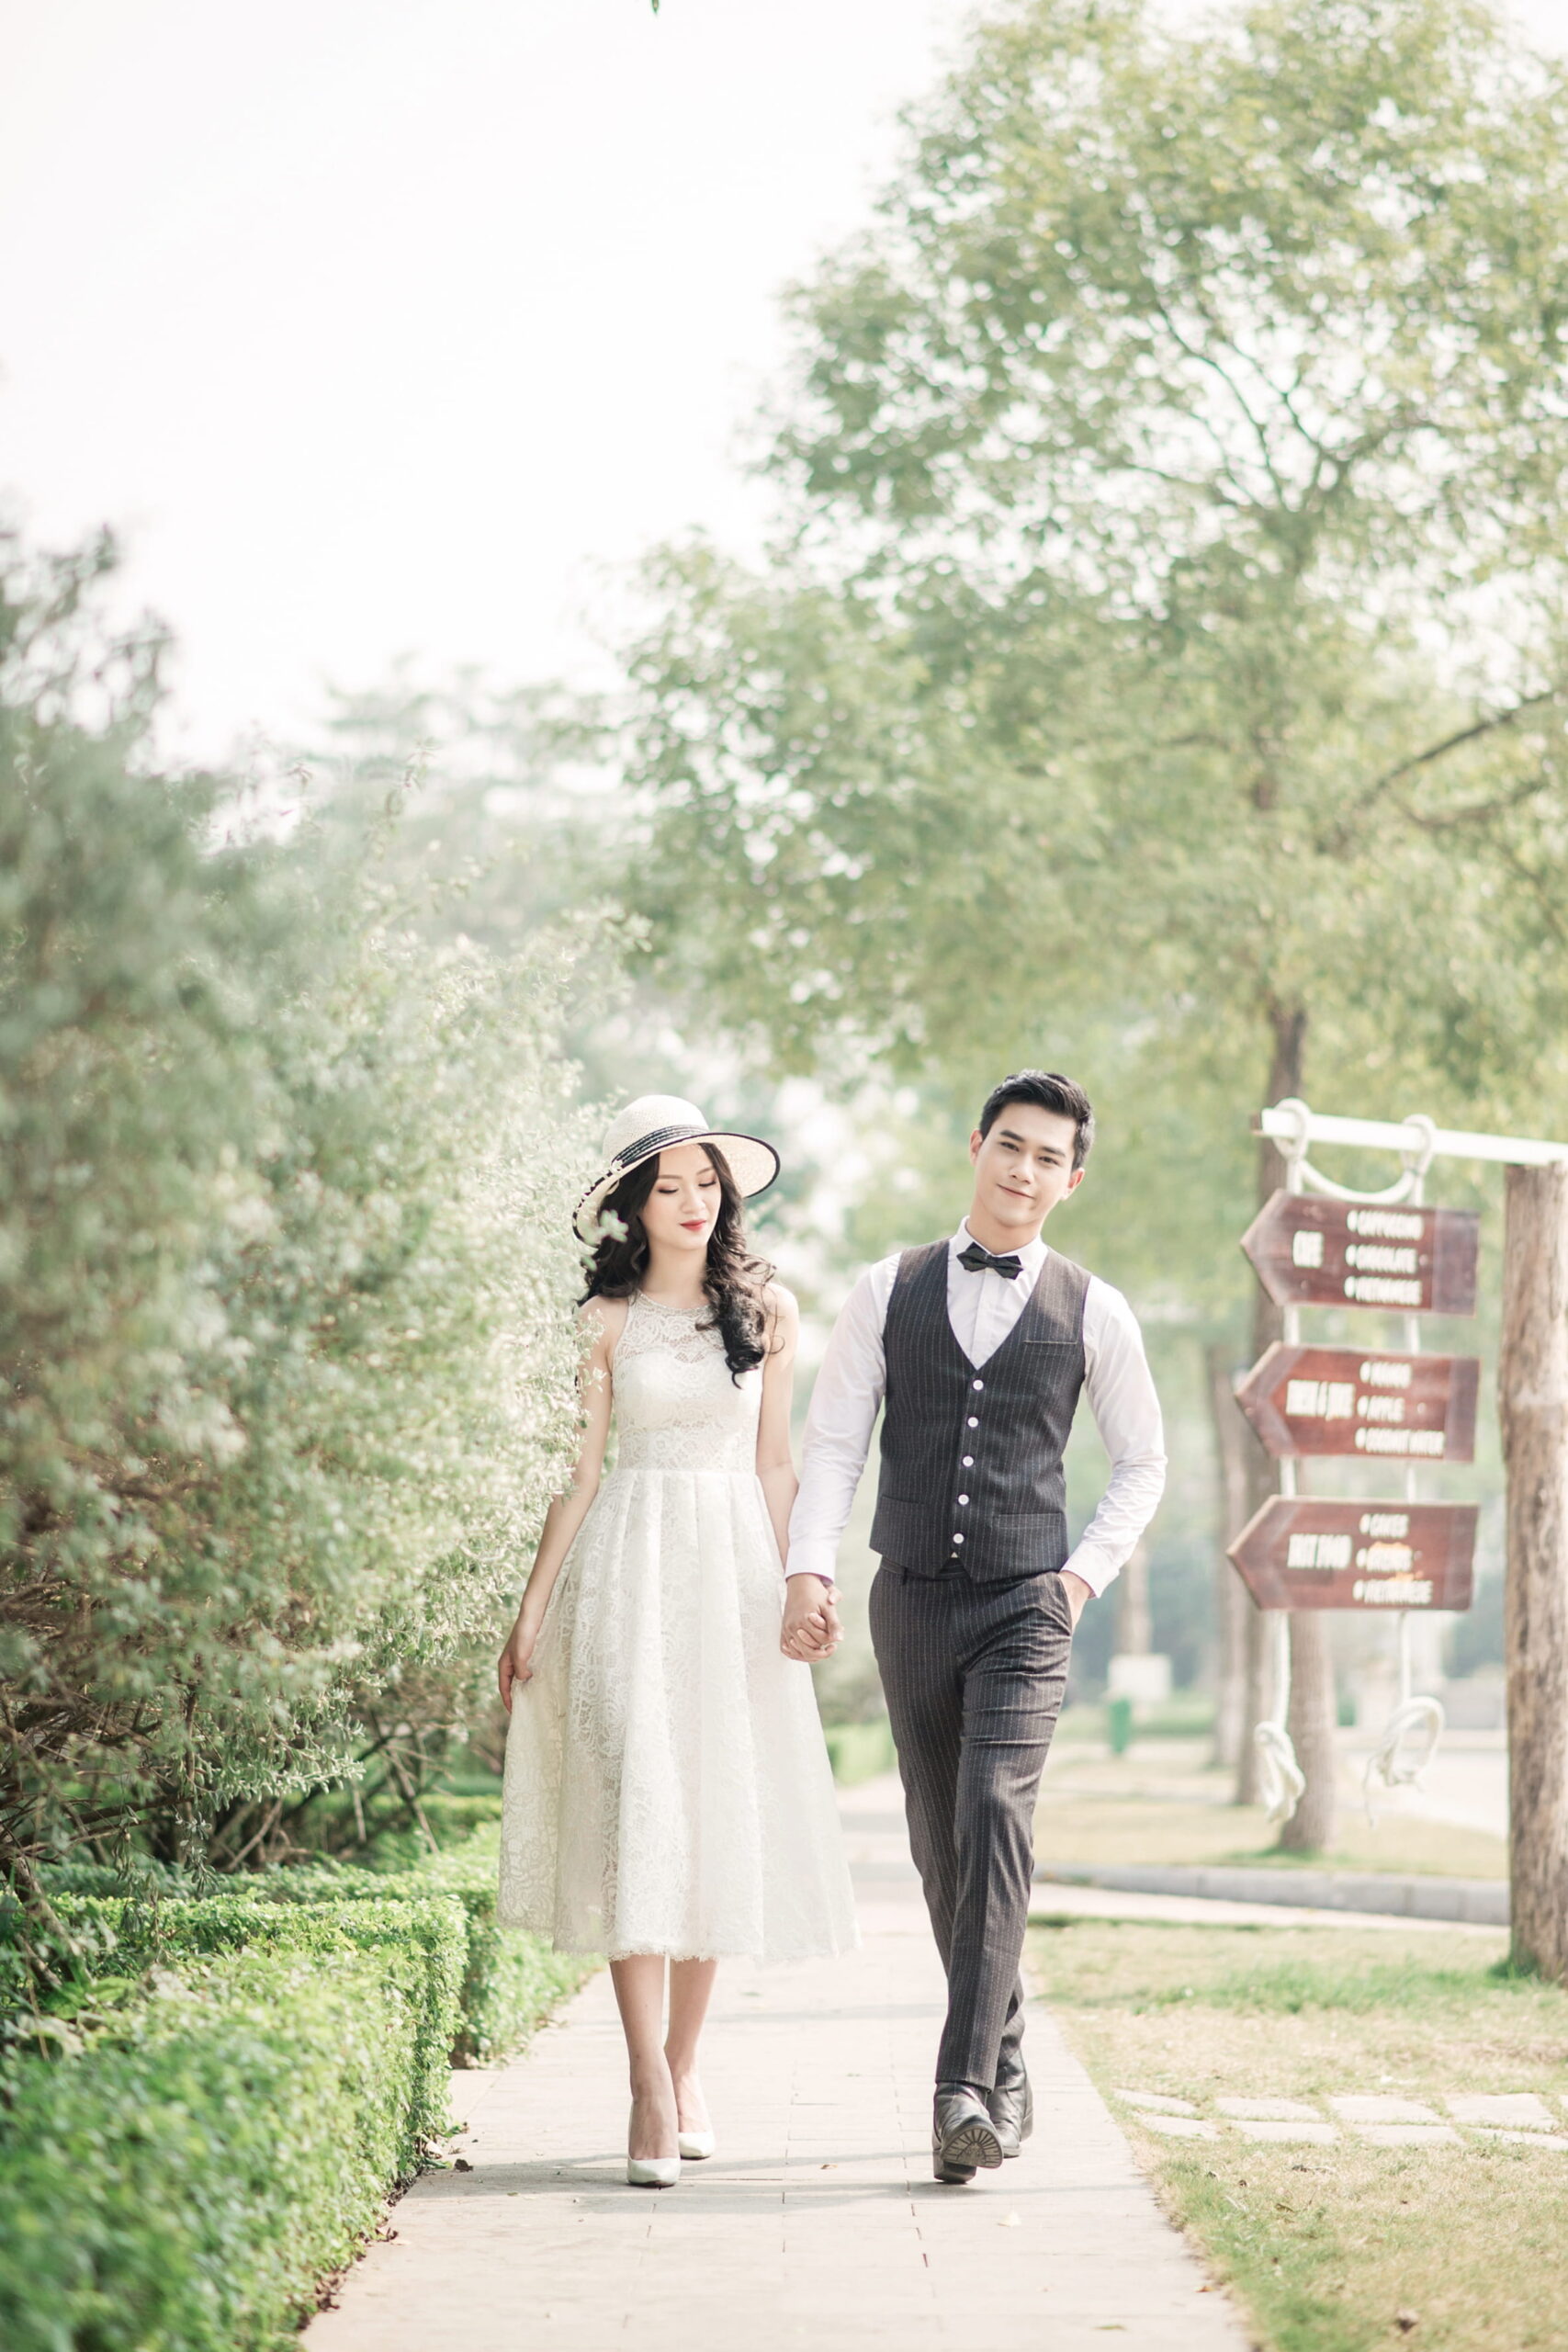 Chụp ảnh cưới tại Biệt thự Hoa Hồng